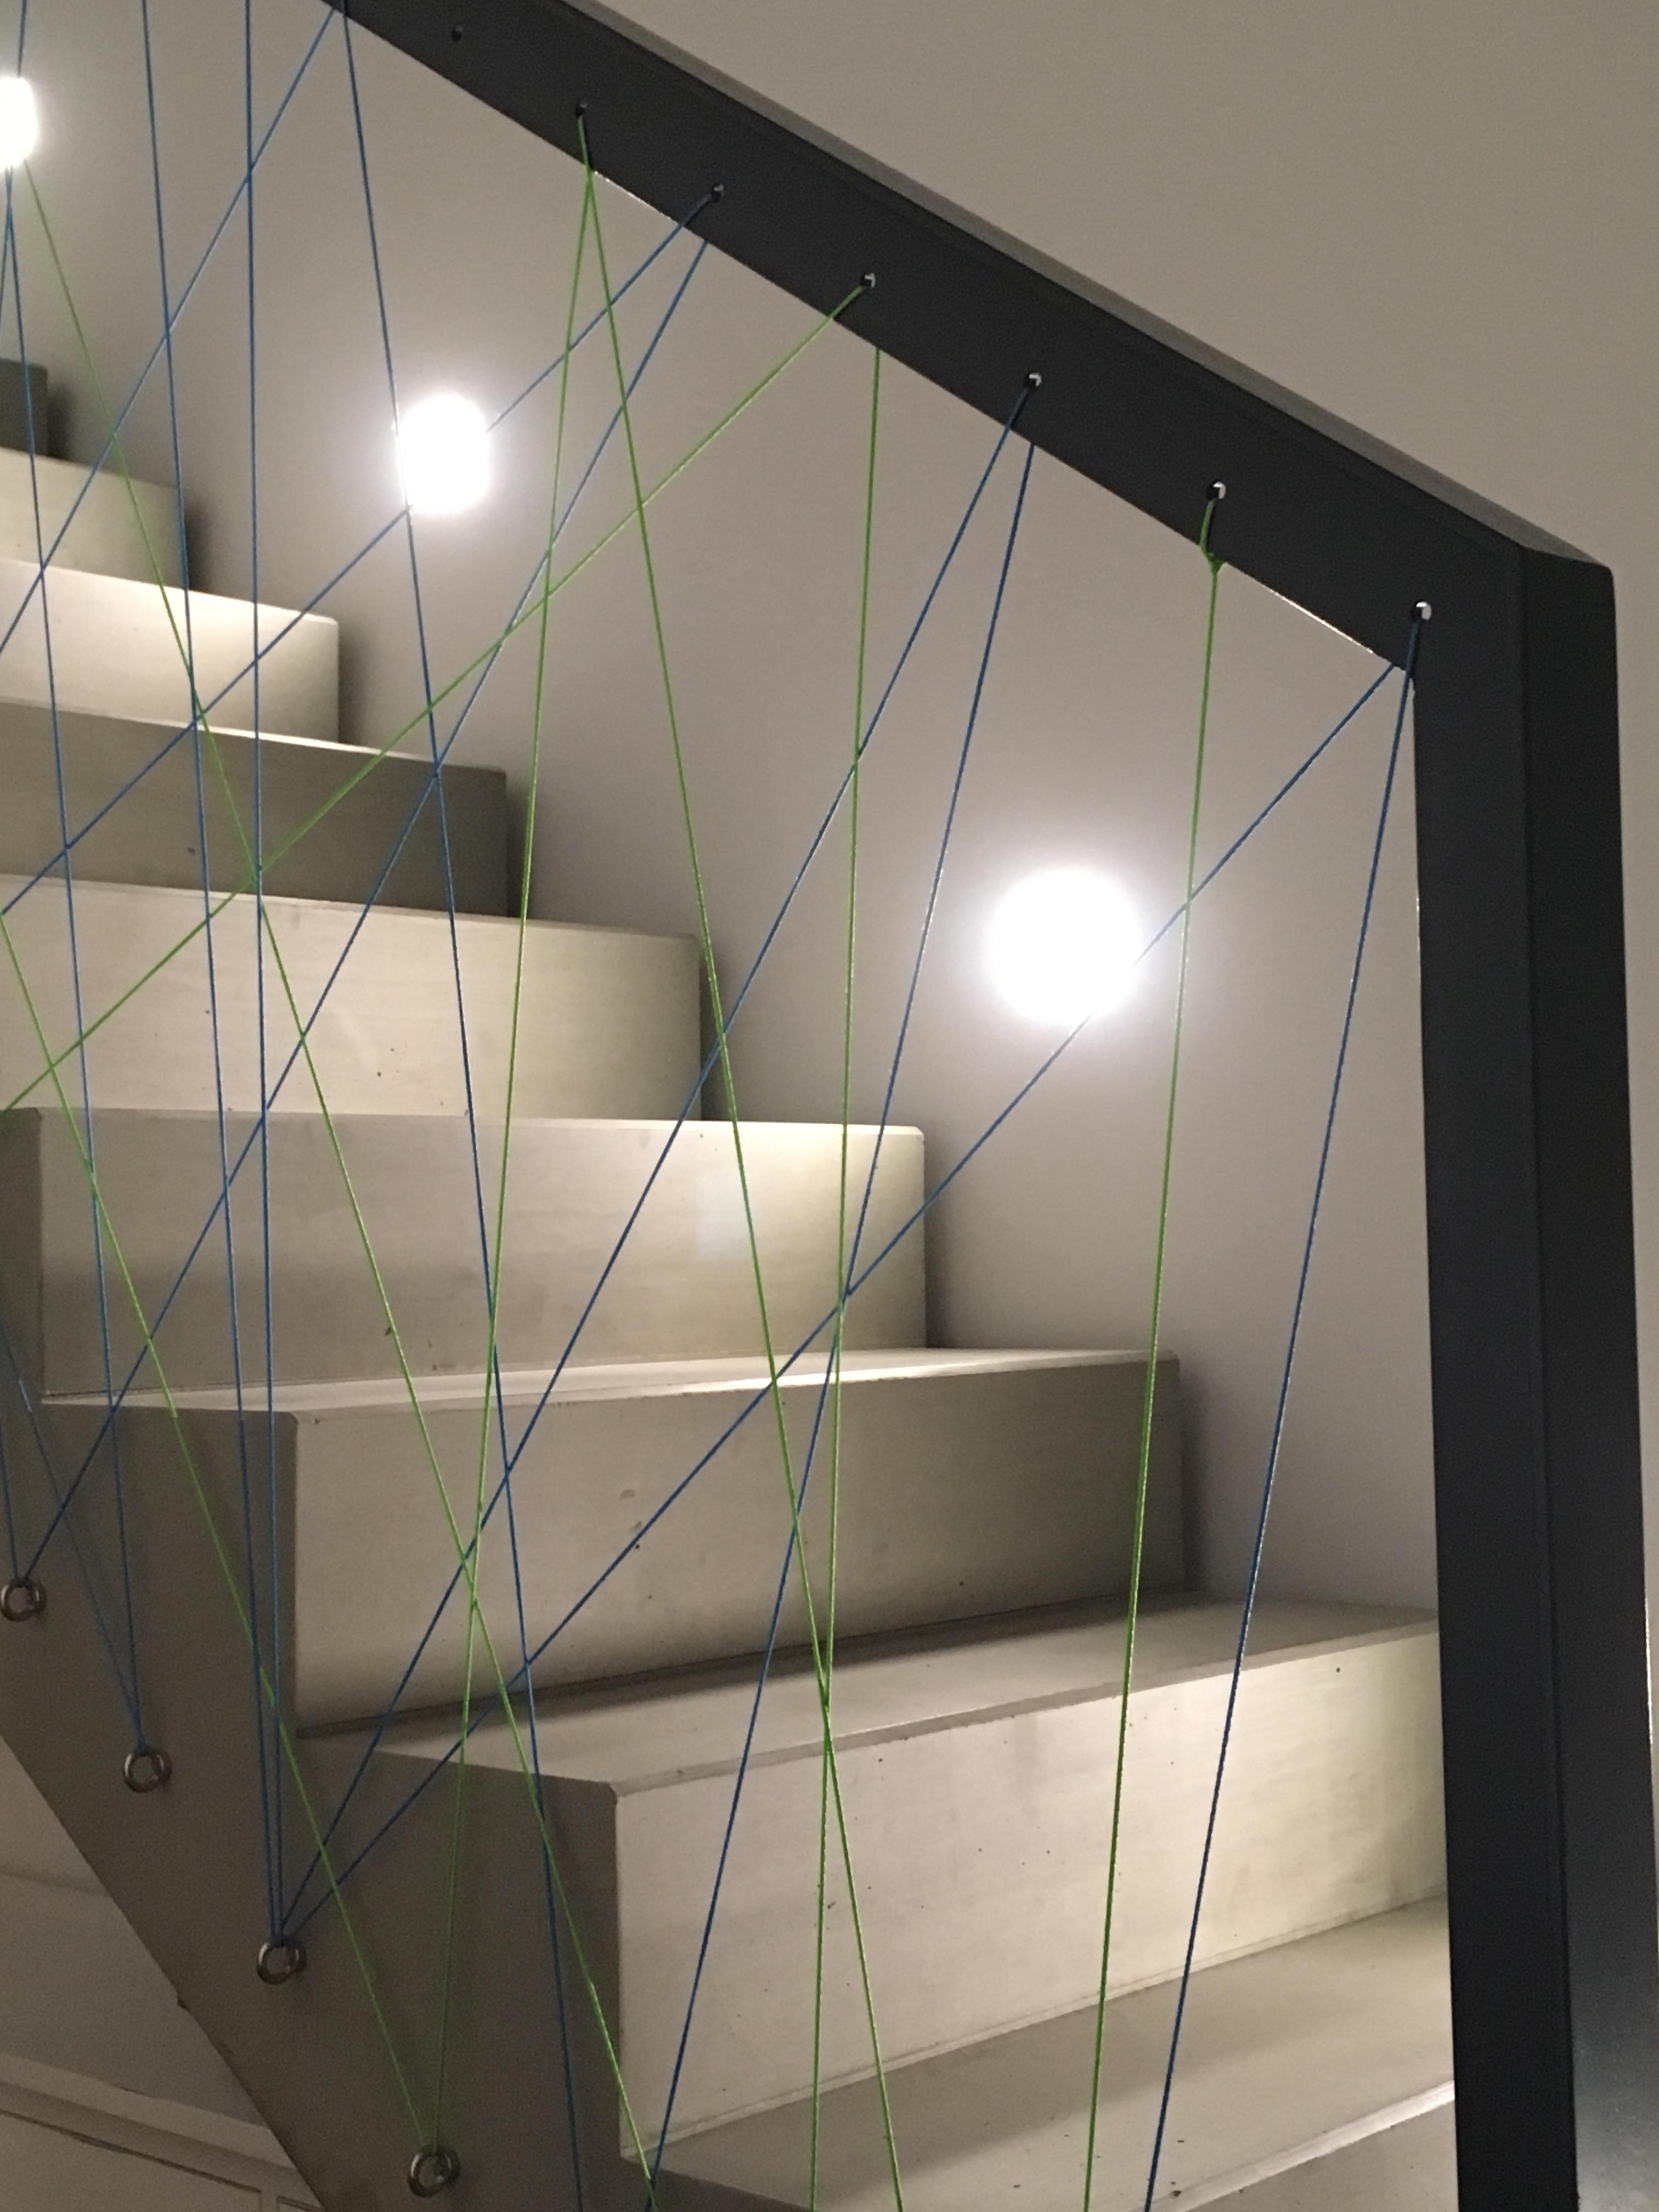 Treppenaufgang Galerie, Fadengeländer statt Glas. #Sichtbeton